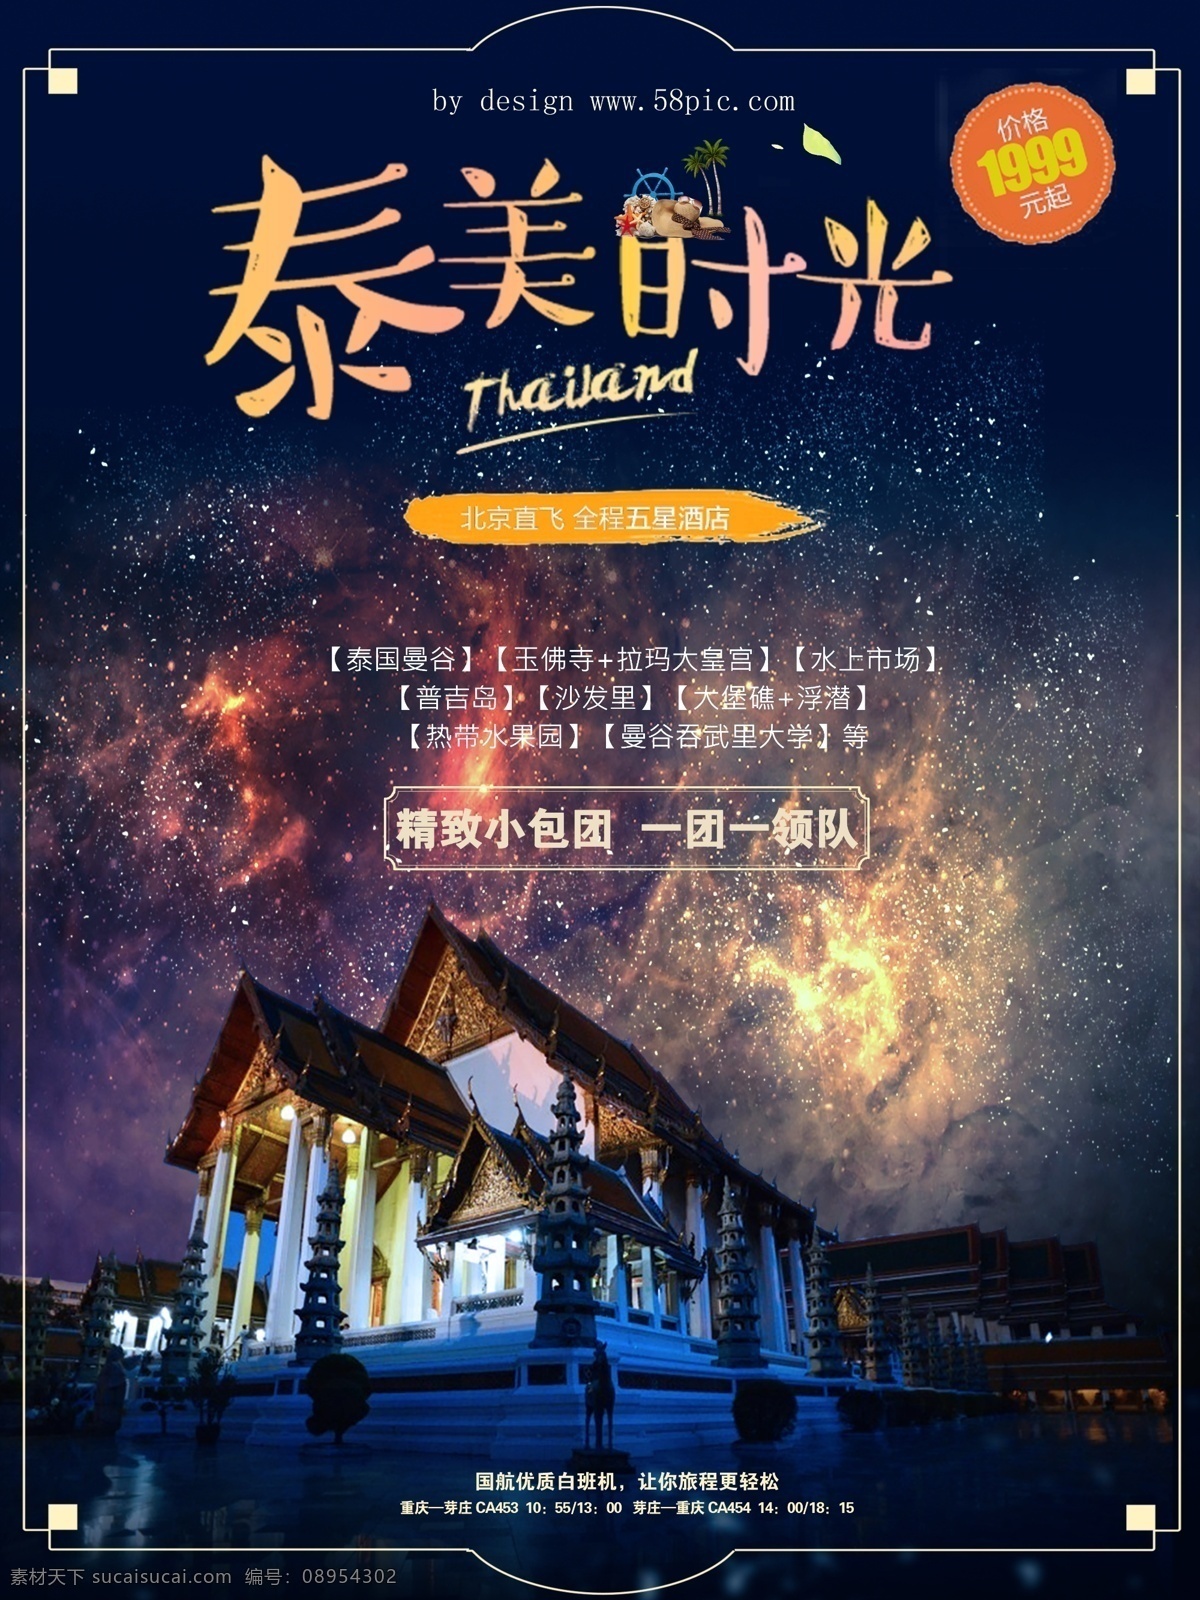 泰 美 时光 泰国 旅游 促销 平面 广告创意 版式 促销海报设计 国际航班 浪漫风格 泰美时光